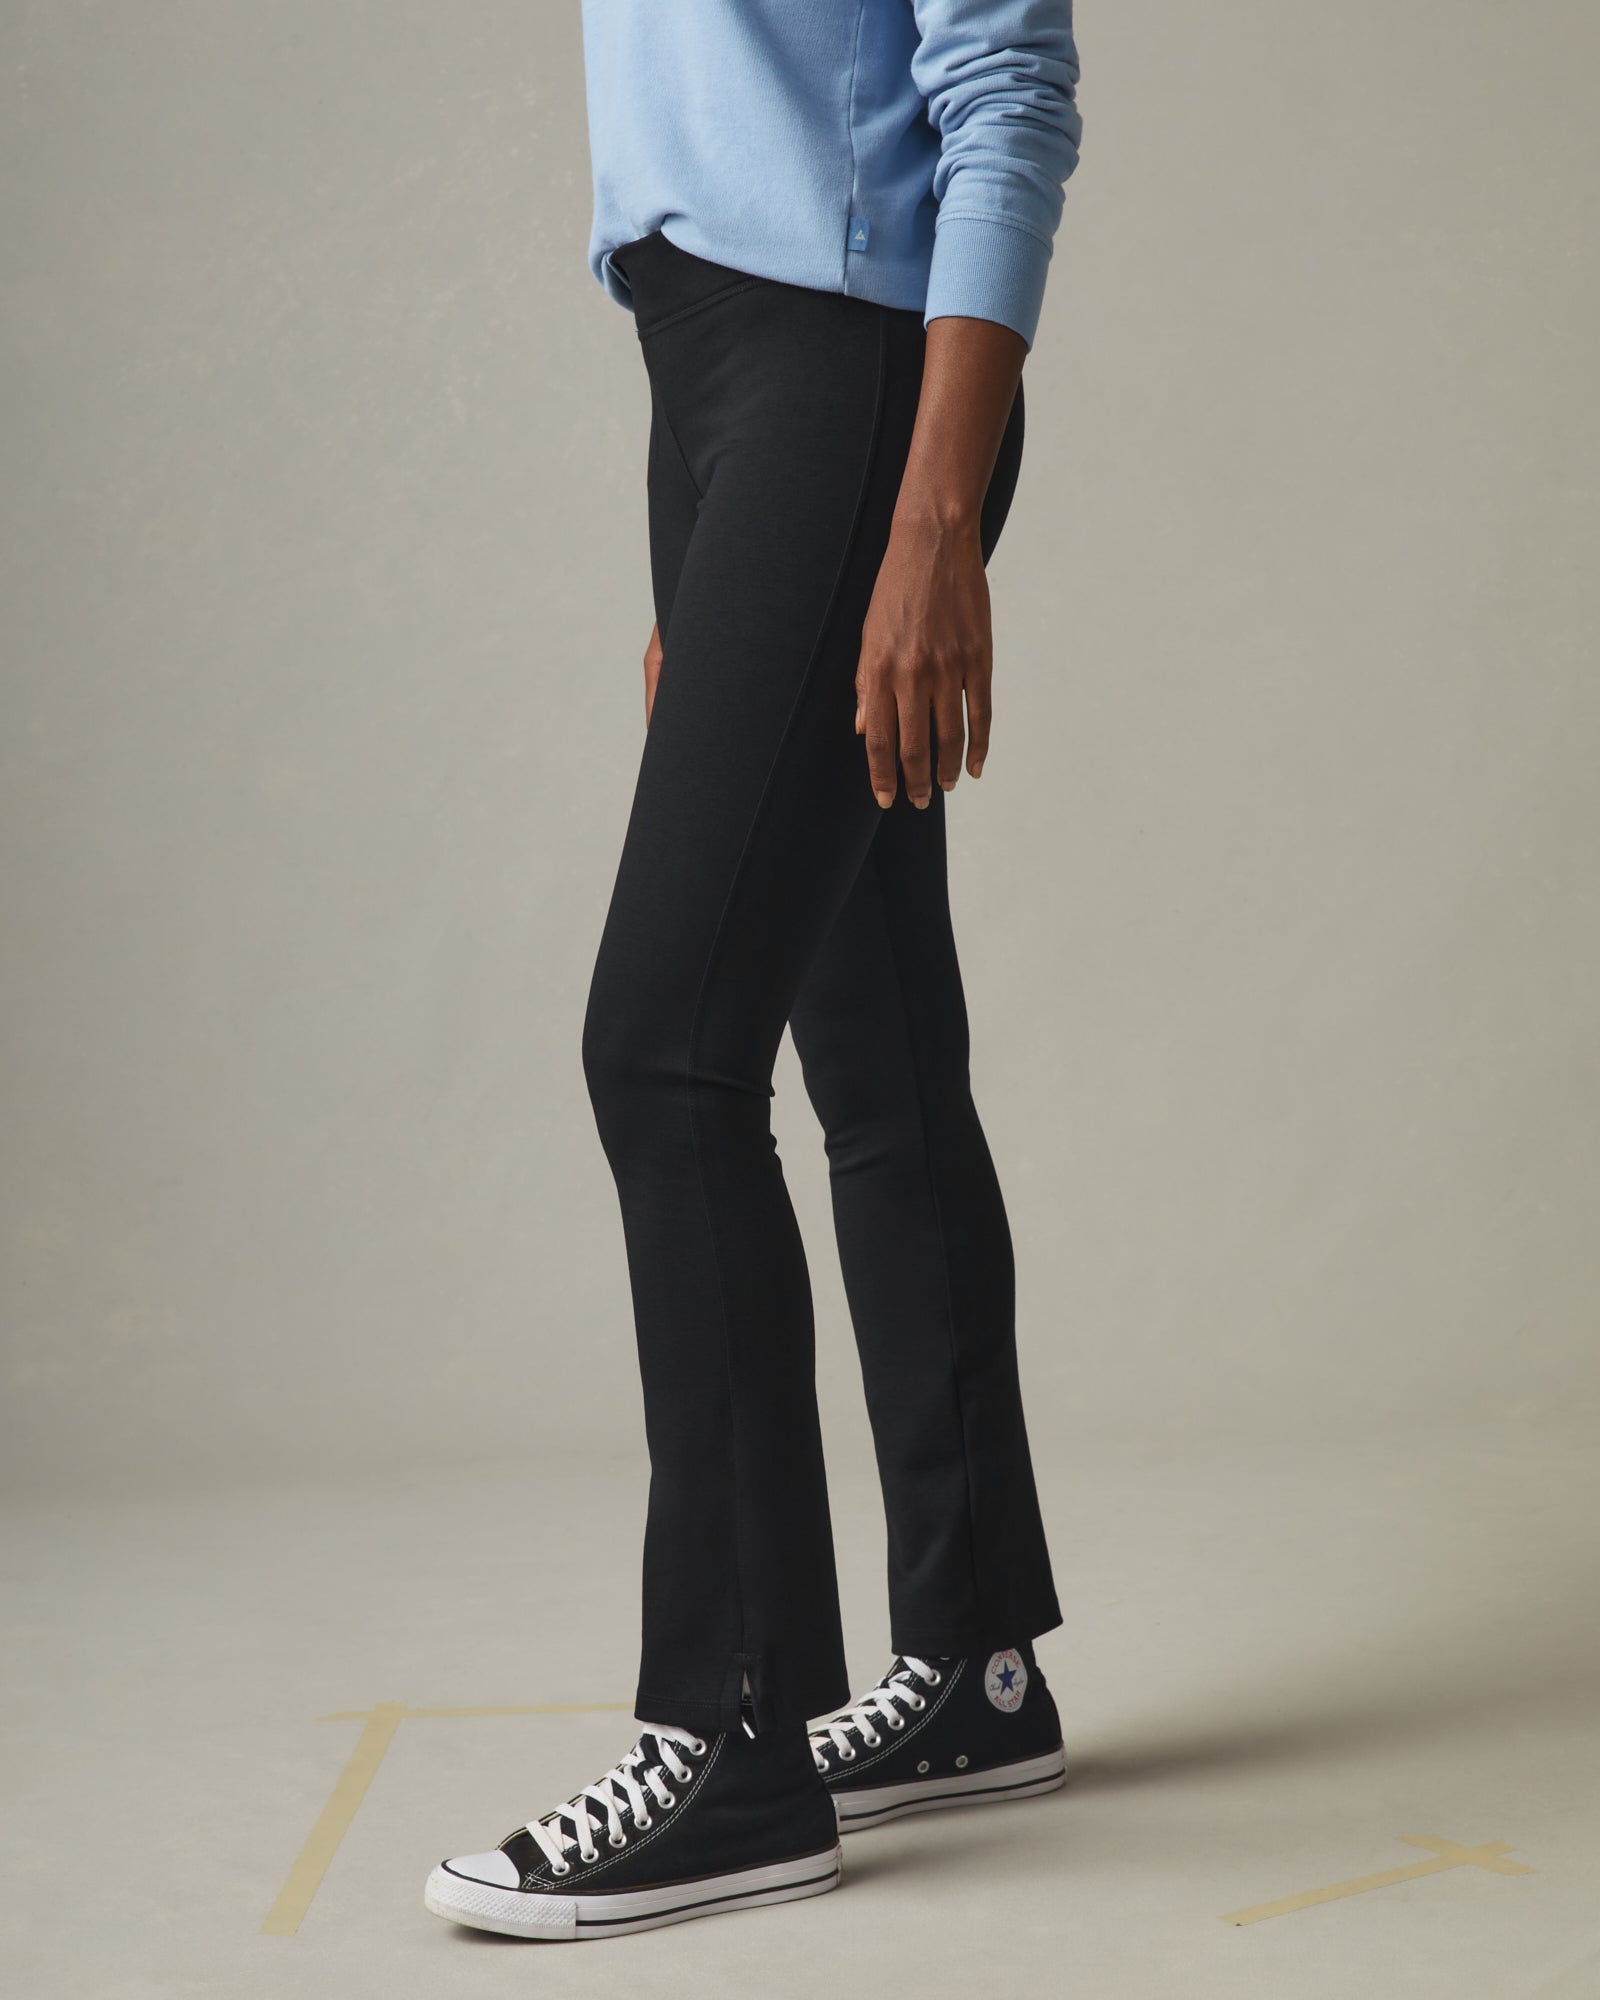 EVERLANE Pants The Kick Crop Black Women Size Size 2 Stretch Cotton